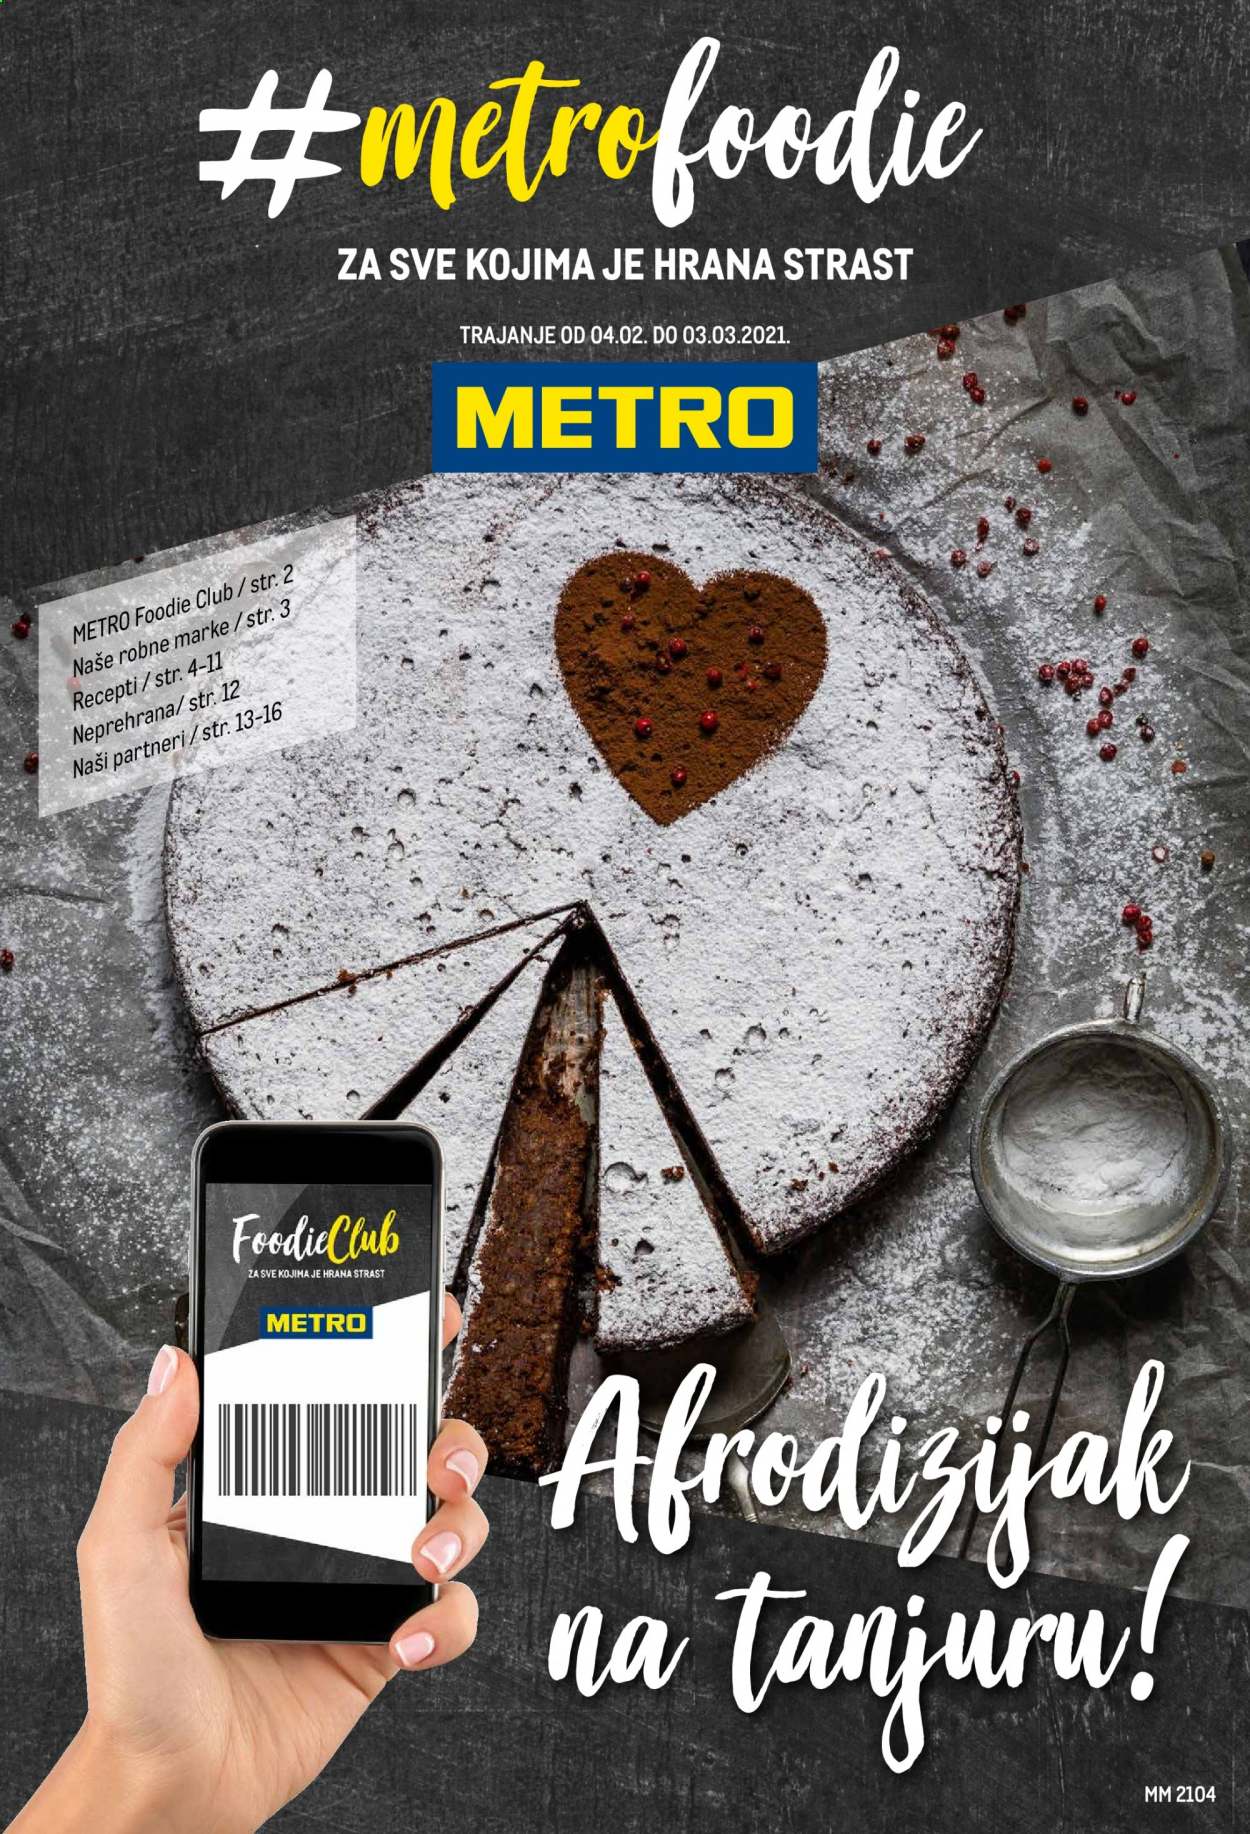 Metro katalog - 04.02.2021. - 03.03.2021.